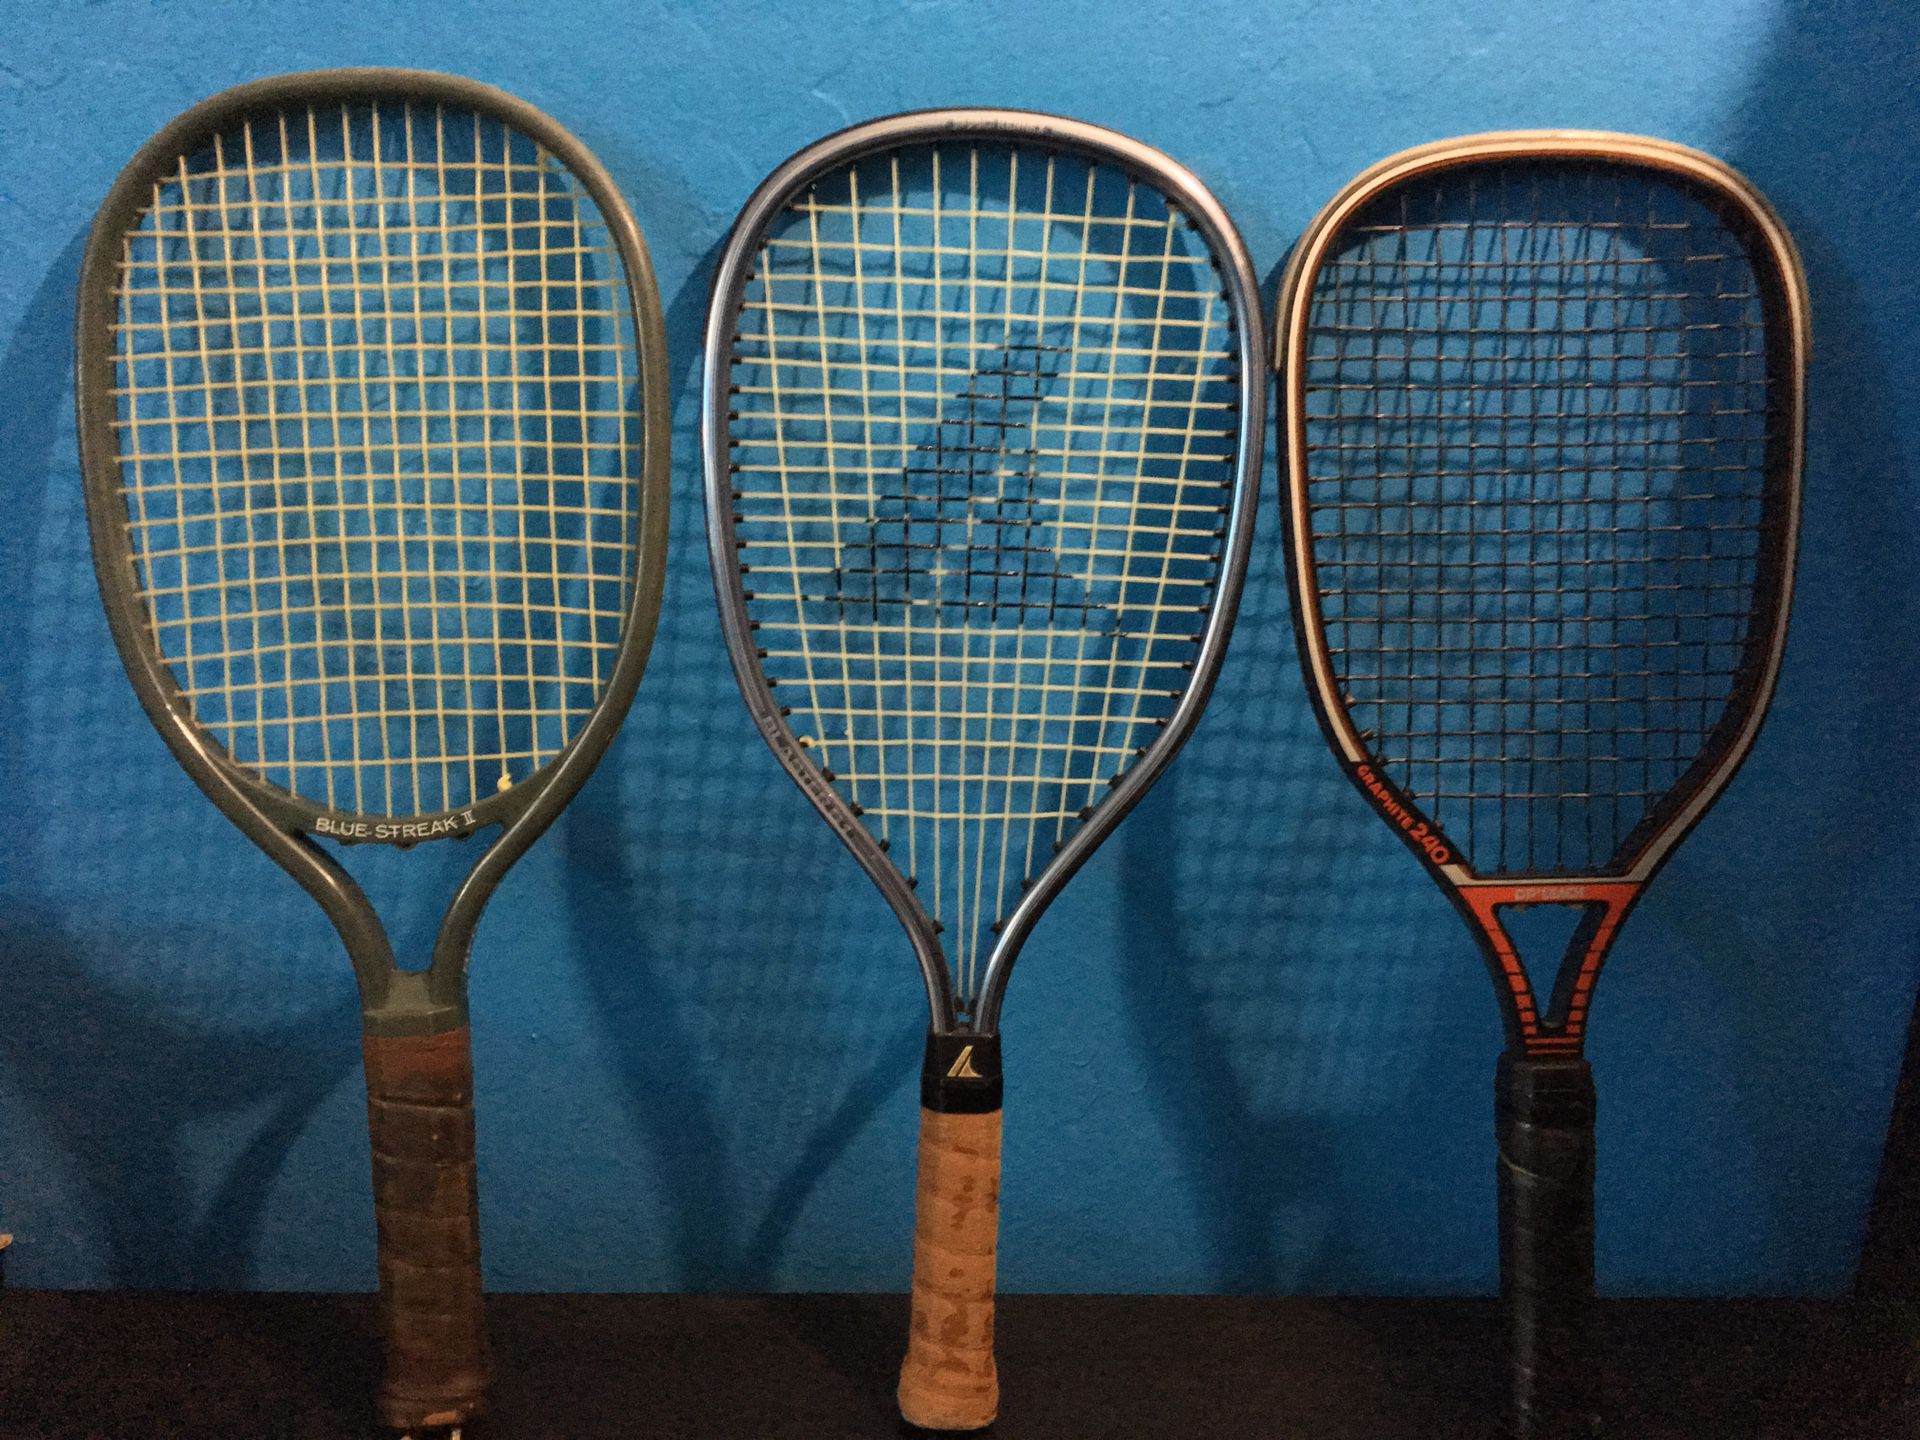 Set of 3 tennis rackets